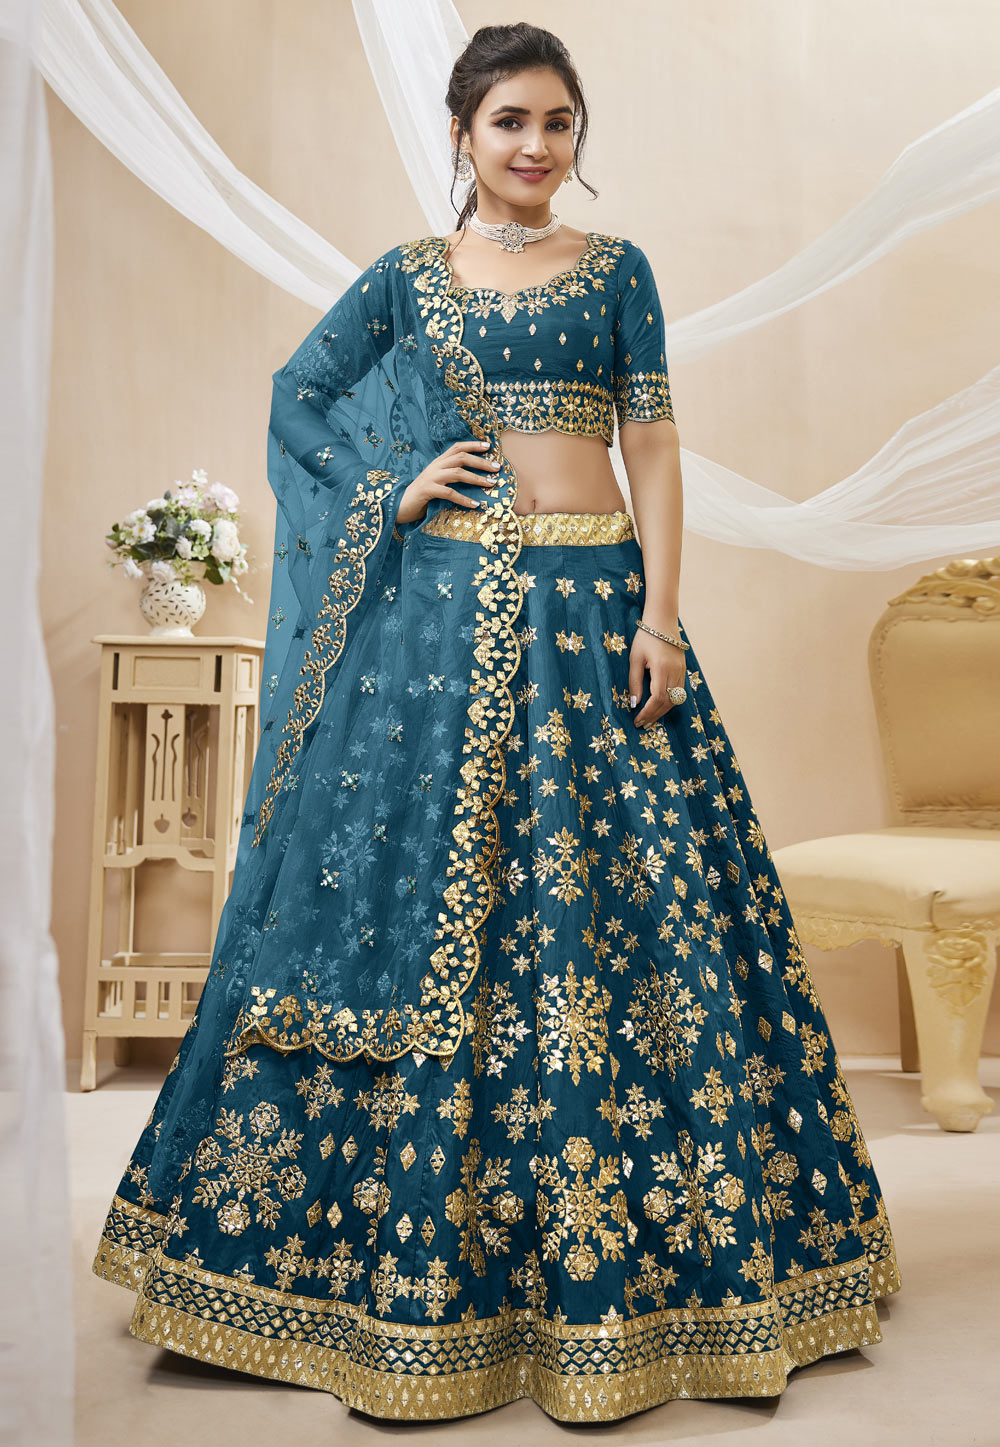 Blue Art Silk Floral Embroidered Bridal Lehenga Choli Latest 3239LG03